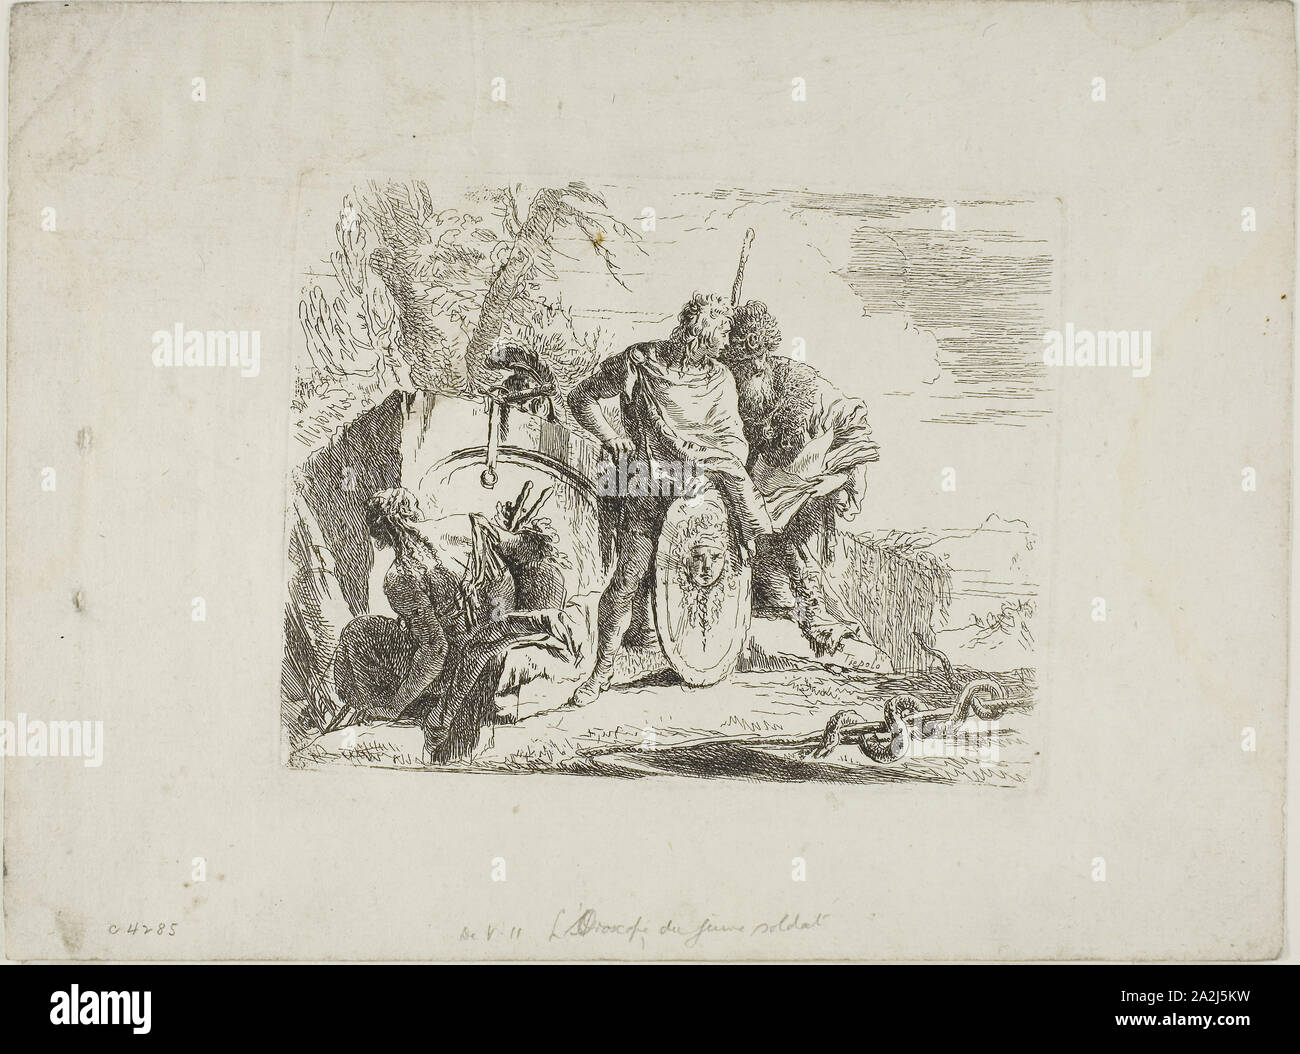 L'Astrologo e il giovane soldato, dai capricci, 1740/50, Giambattista Tiepolo, Italiano, 1696-1770, Italia, incisione su carta, 140 x 180 mm Foto Stock